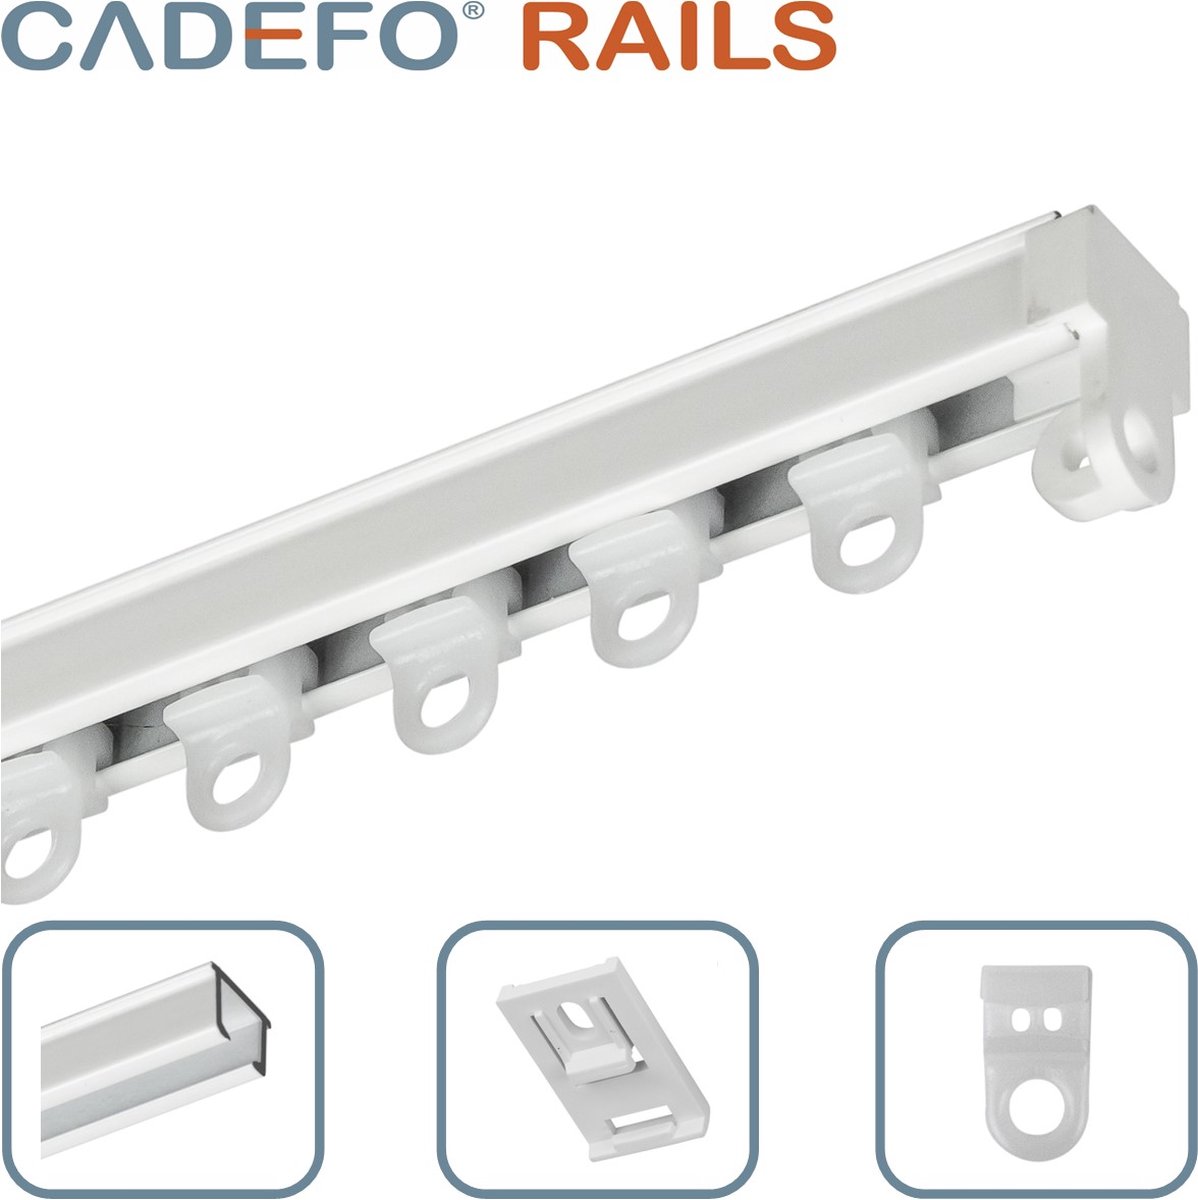 CADEFO RAILS (101 - 150 cm) Gordijnrails - Compleet op maat! - UIT 1 STUK - Leverbaar tot 6 meter - Plafondbevestiging - Lengte 127 cm